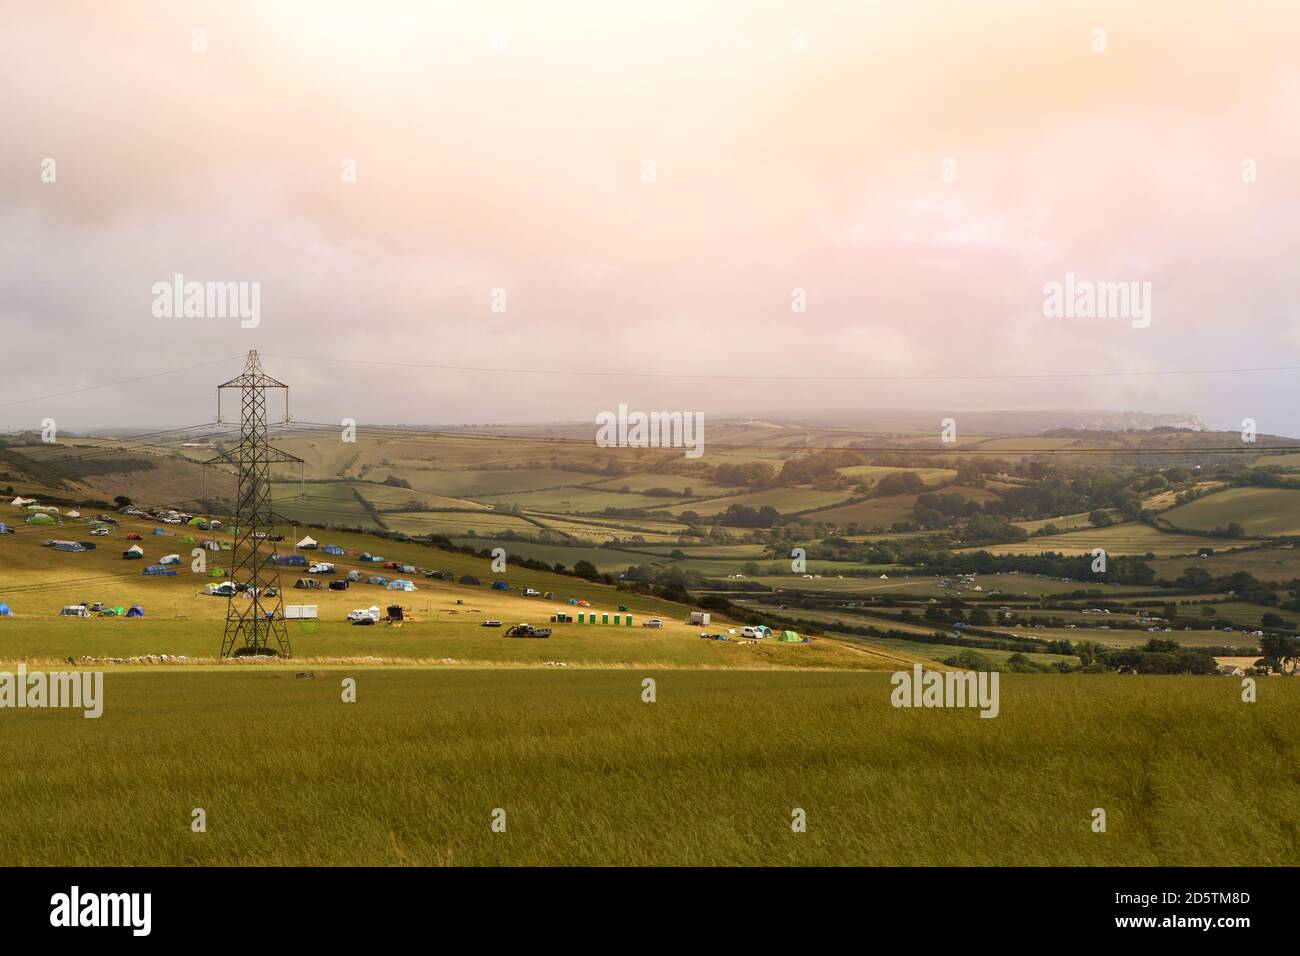 Una vista sulla campagna del Dorset con un campeggio di tende in lontananza e una torre elettrica a reticolo. Foto Stock